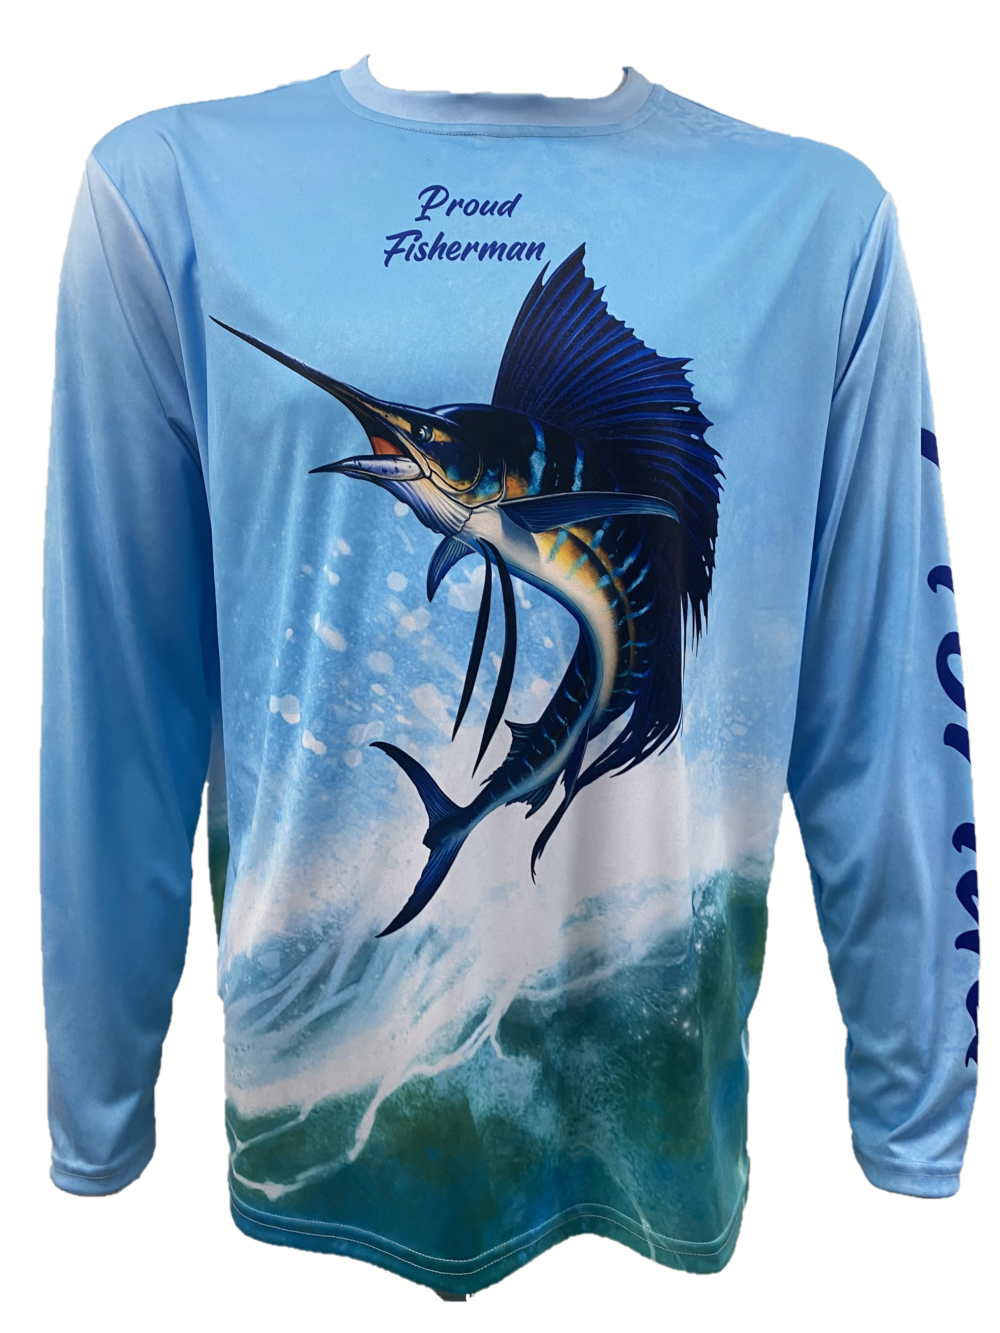 Long Sleeve Proud Fisherman Fishing Shirt